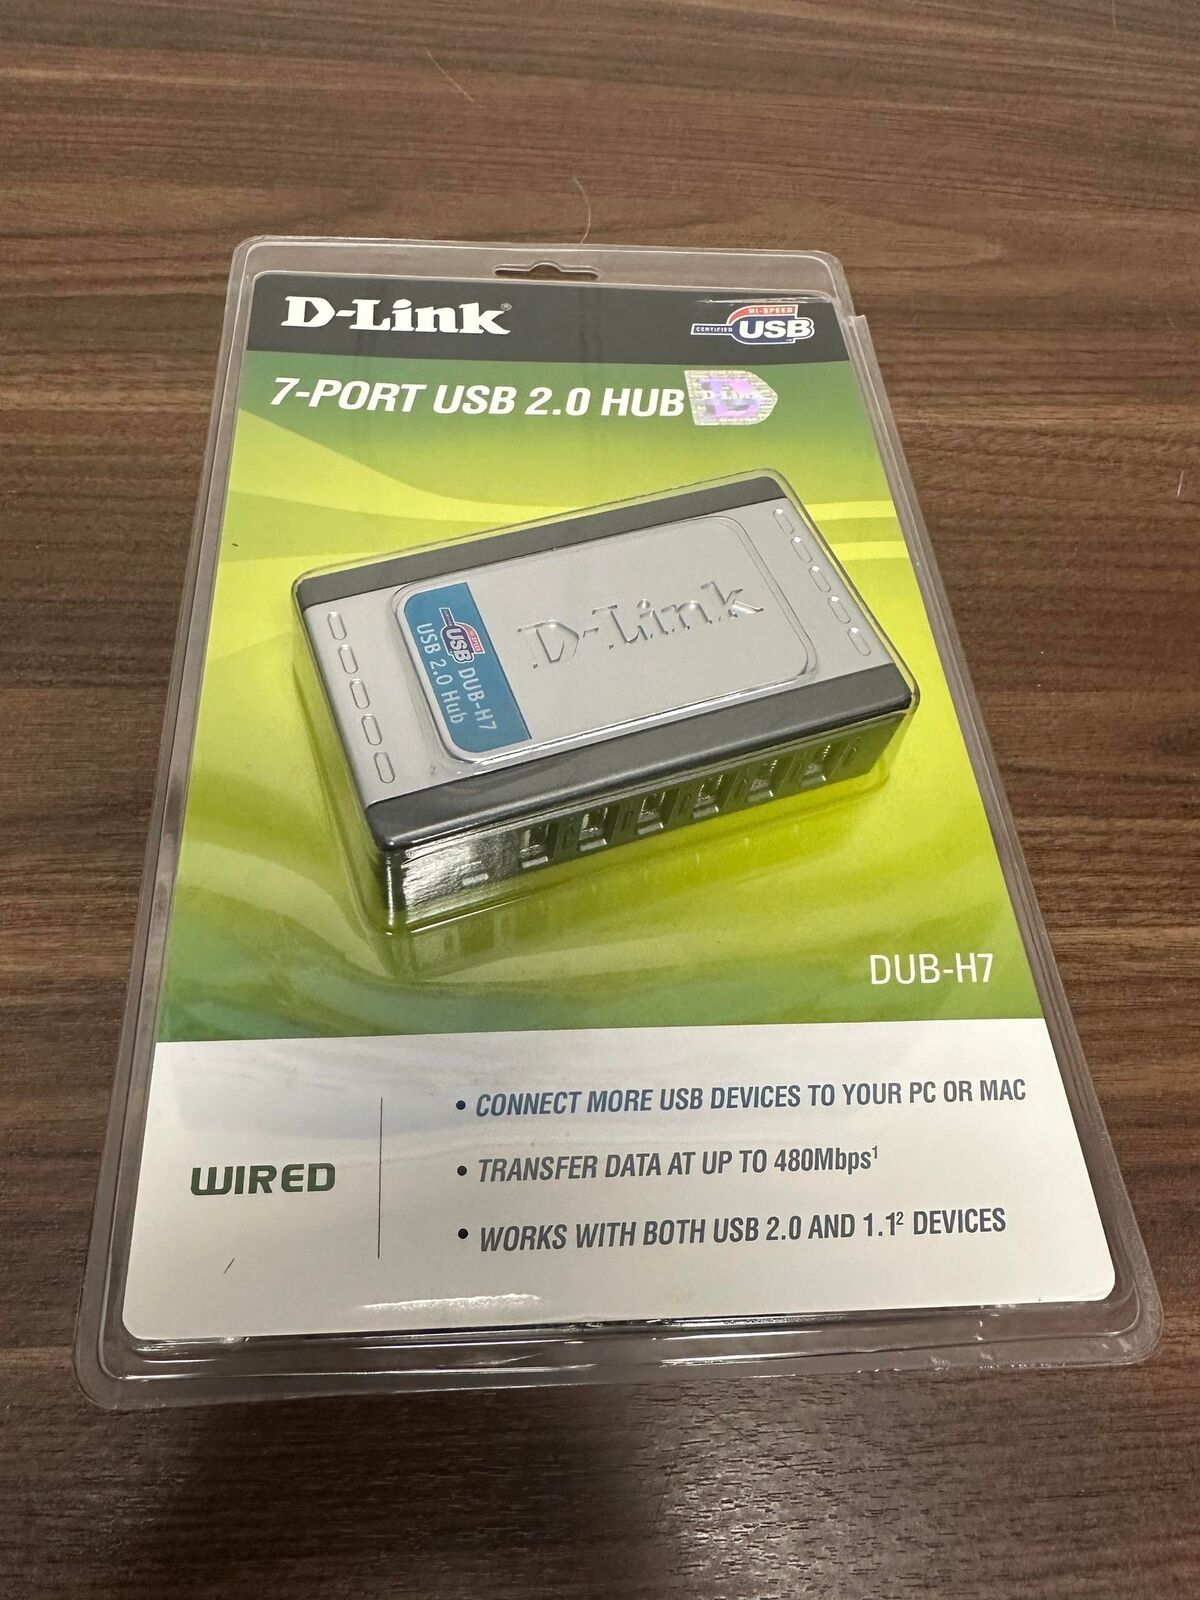 D-Link 7-Port USB 2.0 Hub DUB-H7 Mint